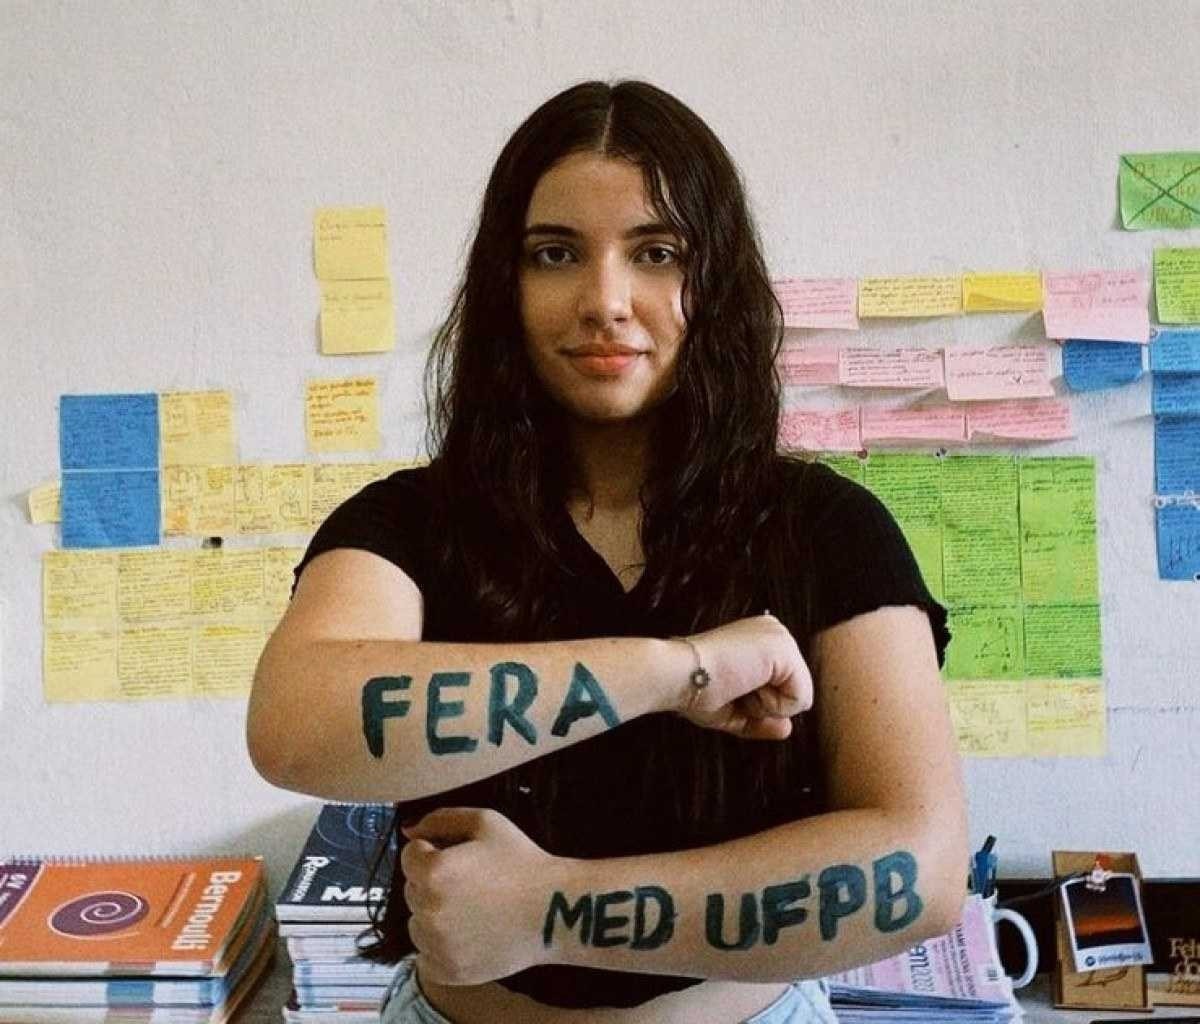 Angélica, de 20 anos, passou no curso de medicina para a UFPB, com nota de 877,55